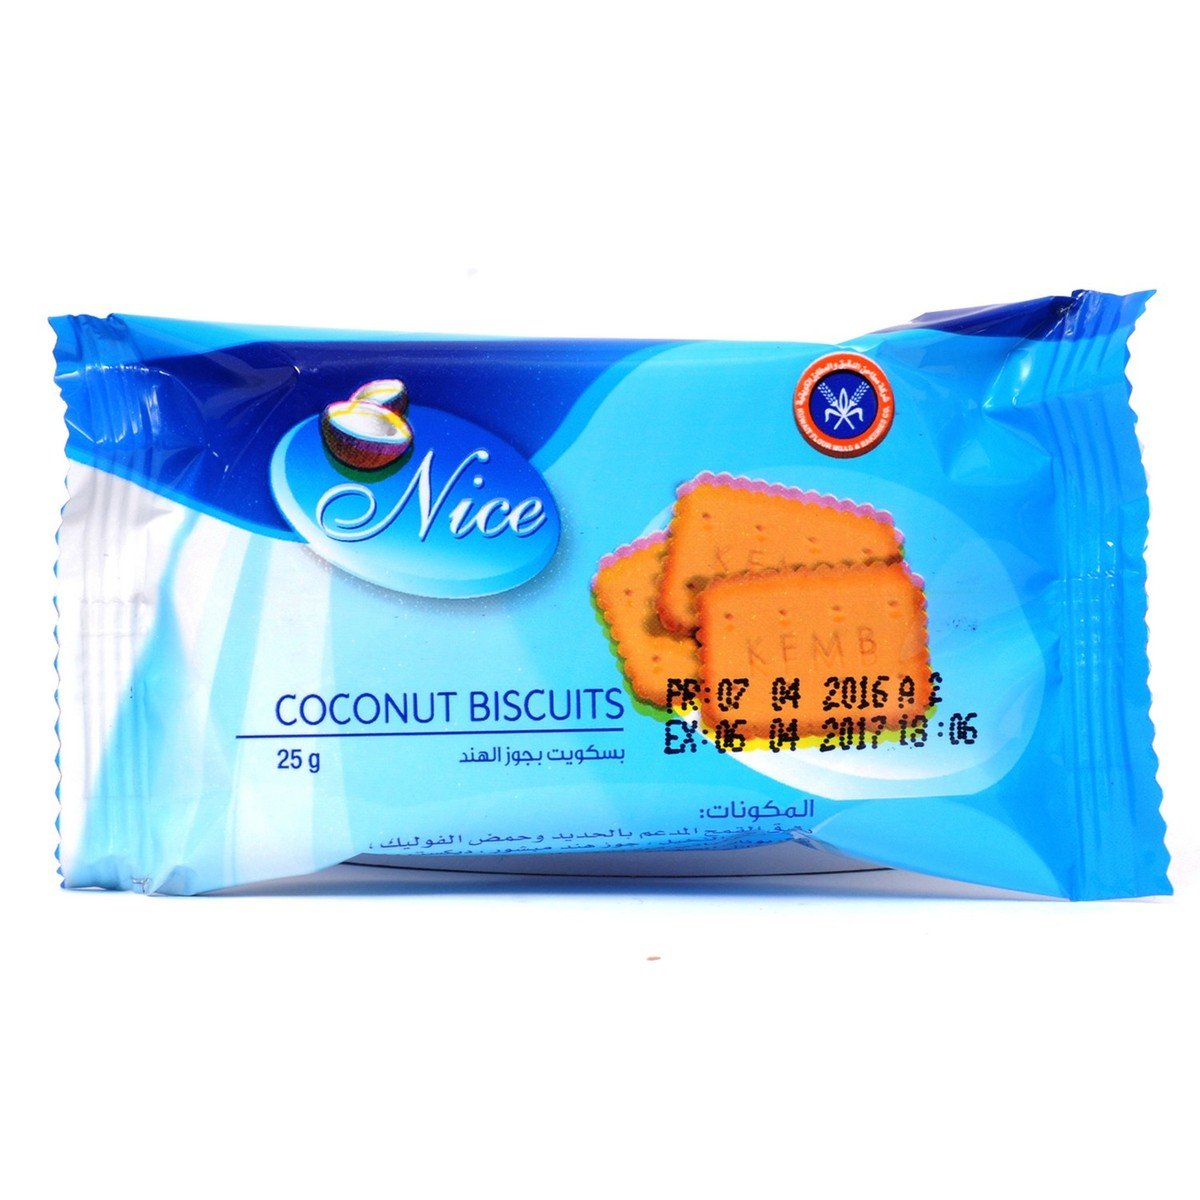 KFMBC Nice Coconut Biscuits 24 x 25 g